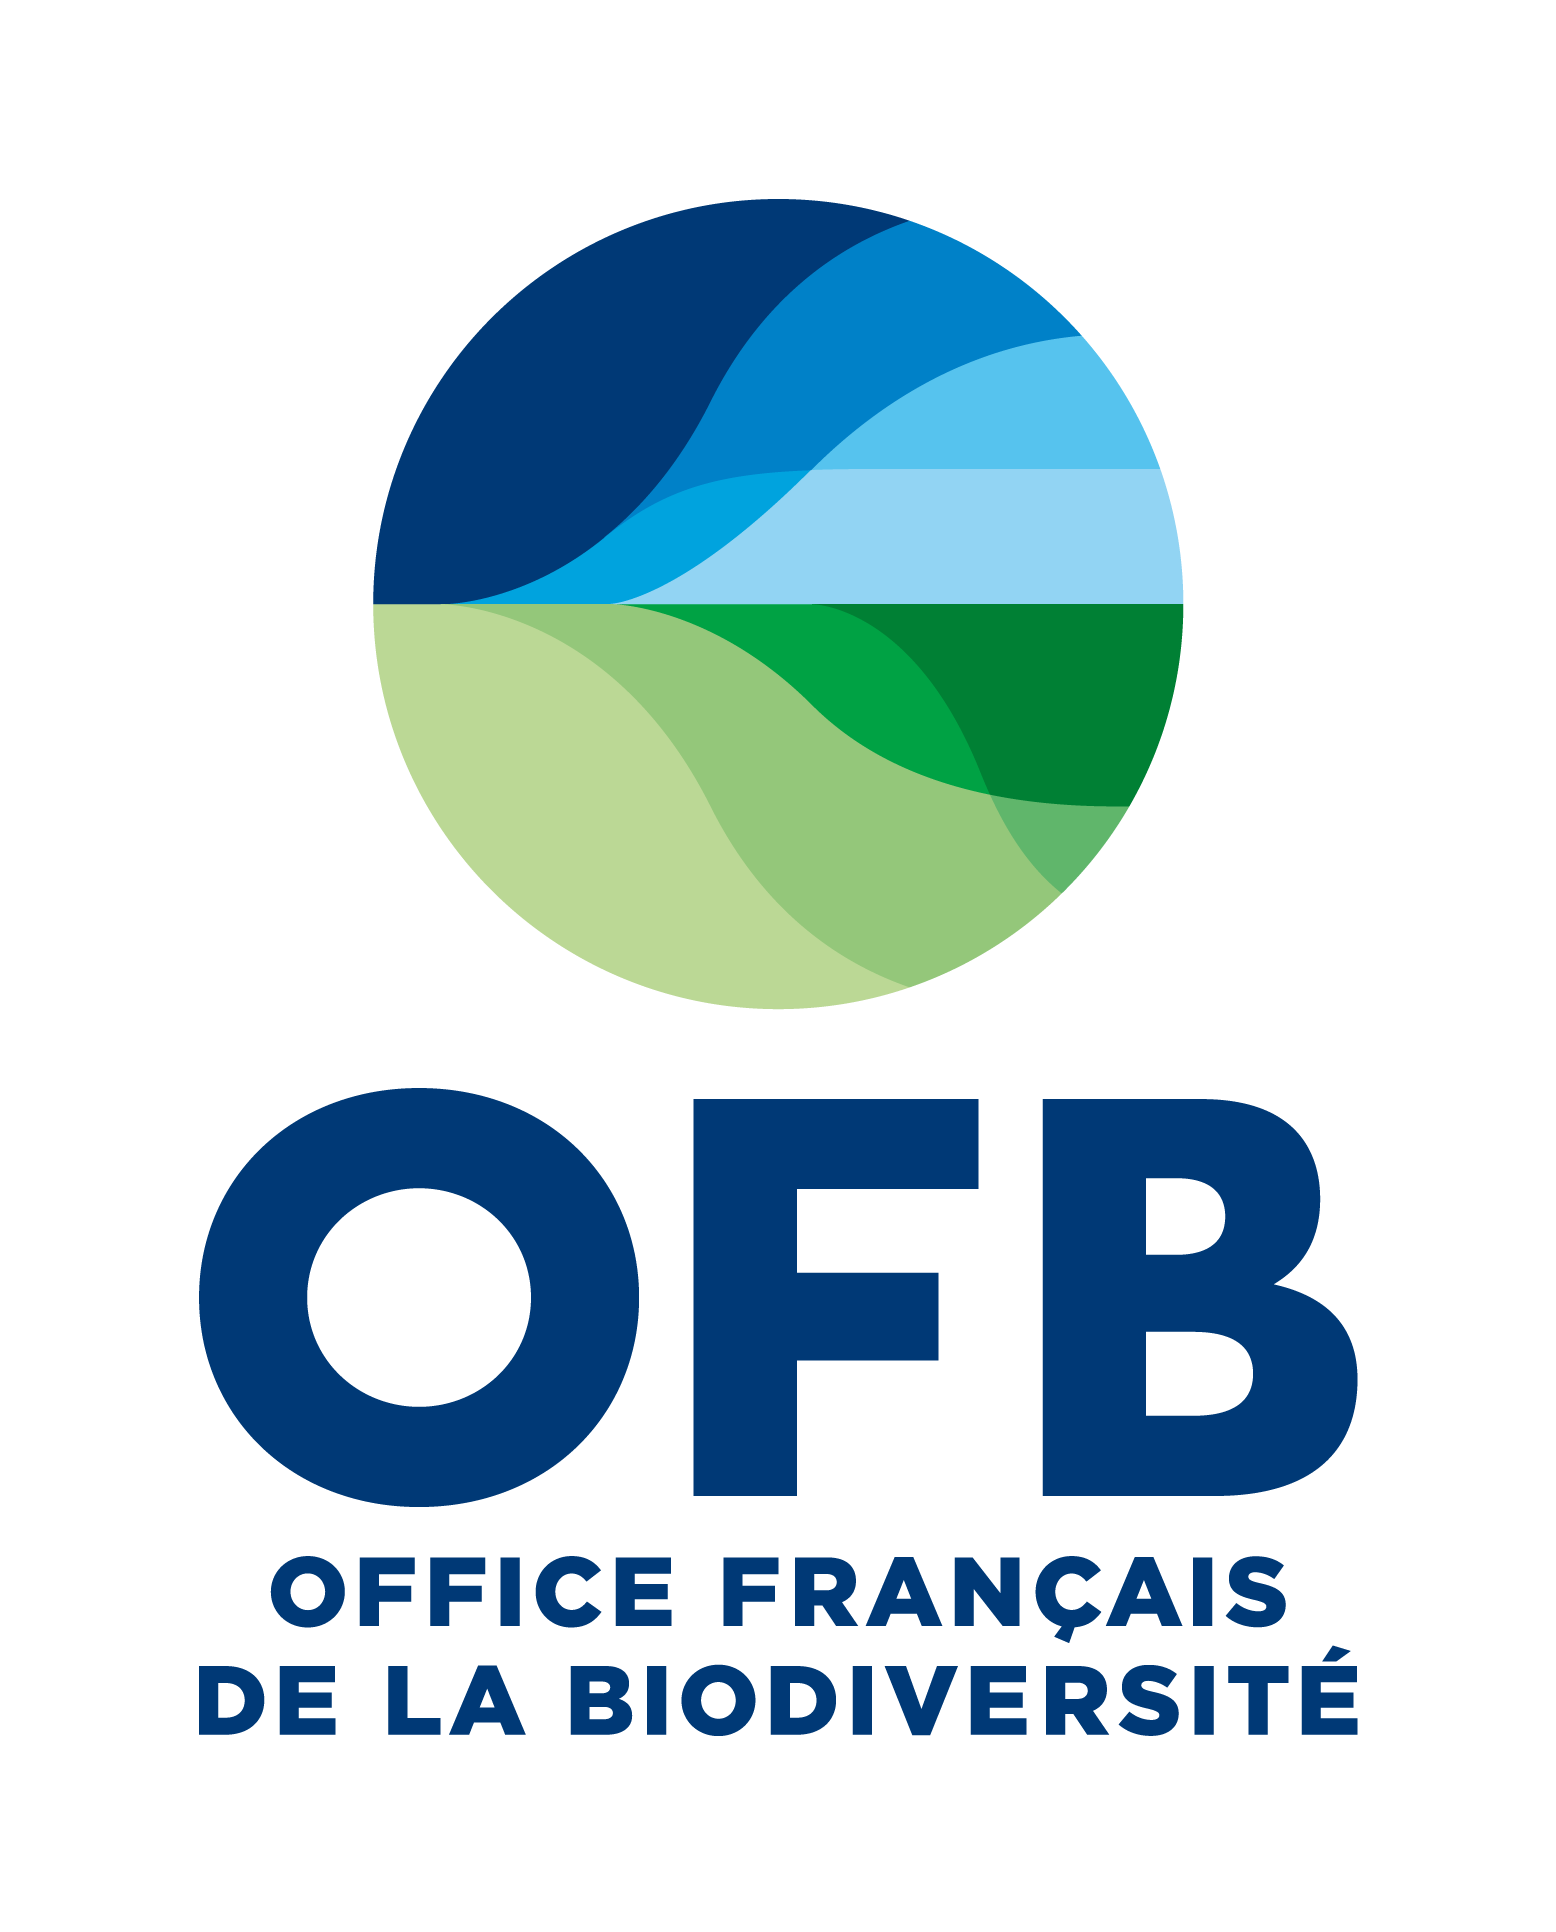 Office Français de la Biodiversité